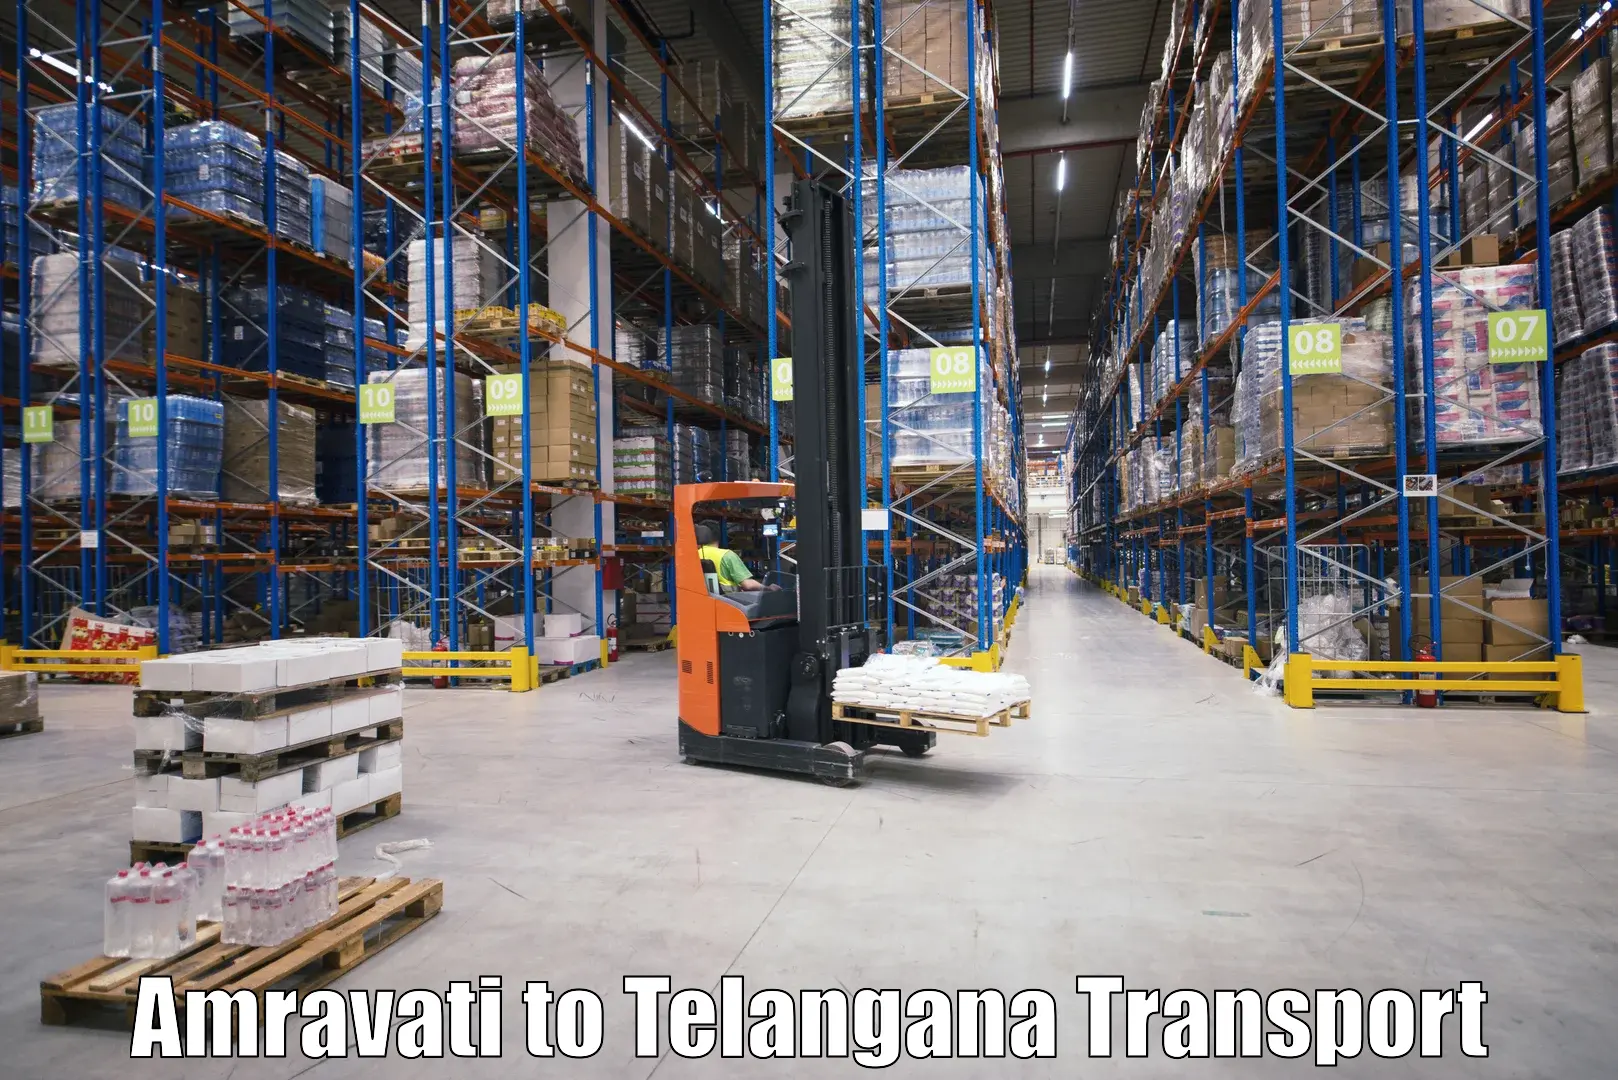 Transportation services Amravati to Mahabubabad